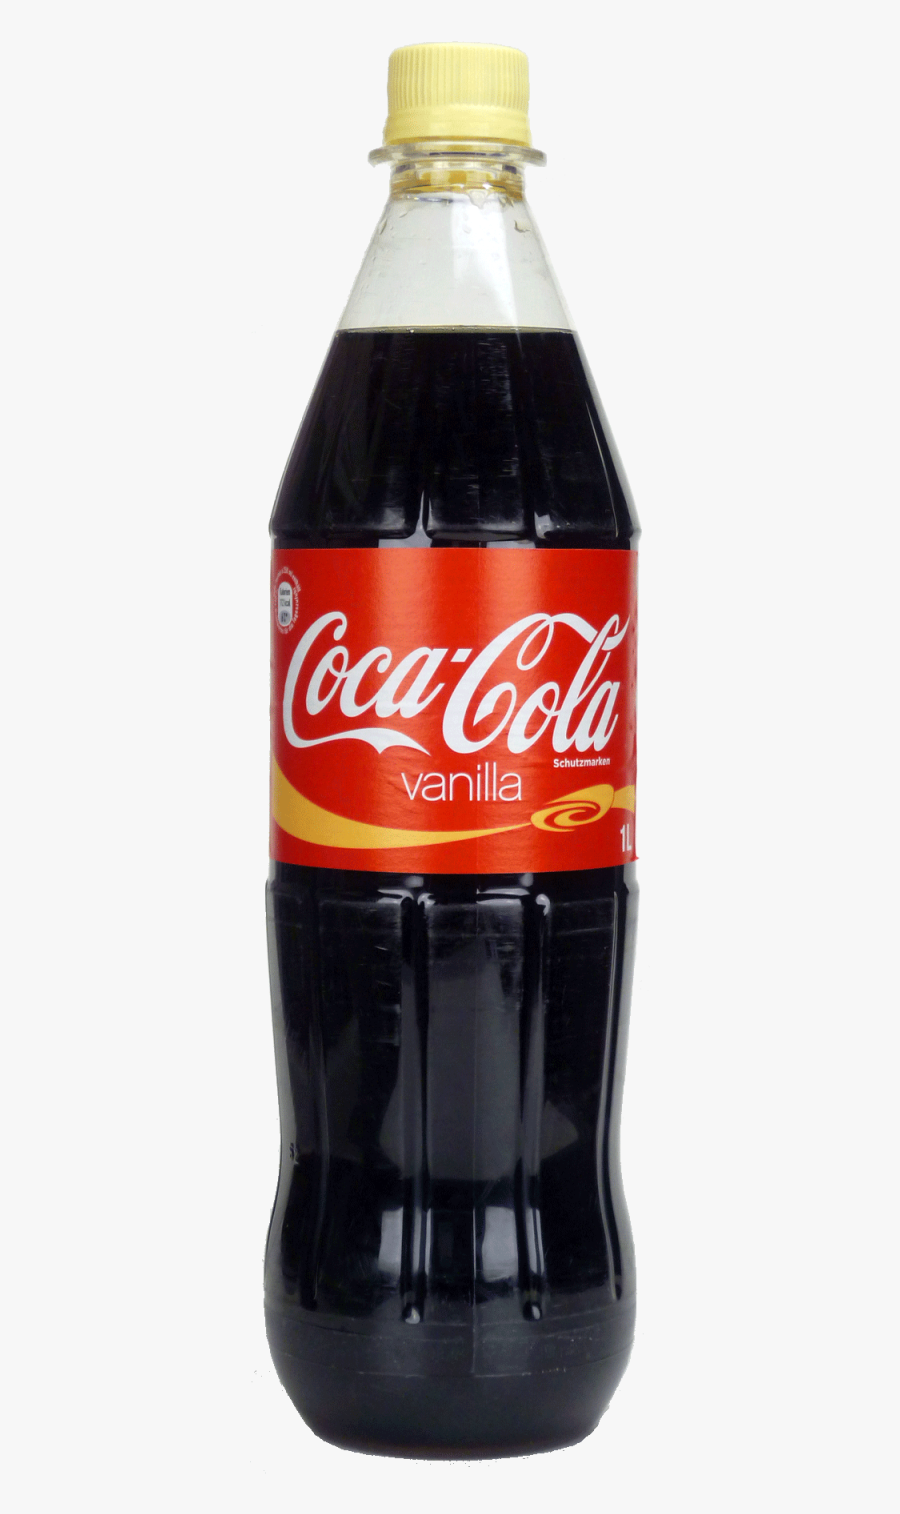 Vanilla Coca Cola Png, Transparent Clipart